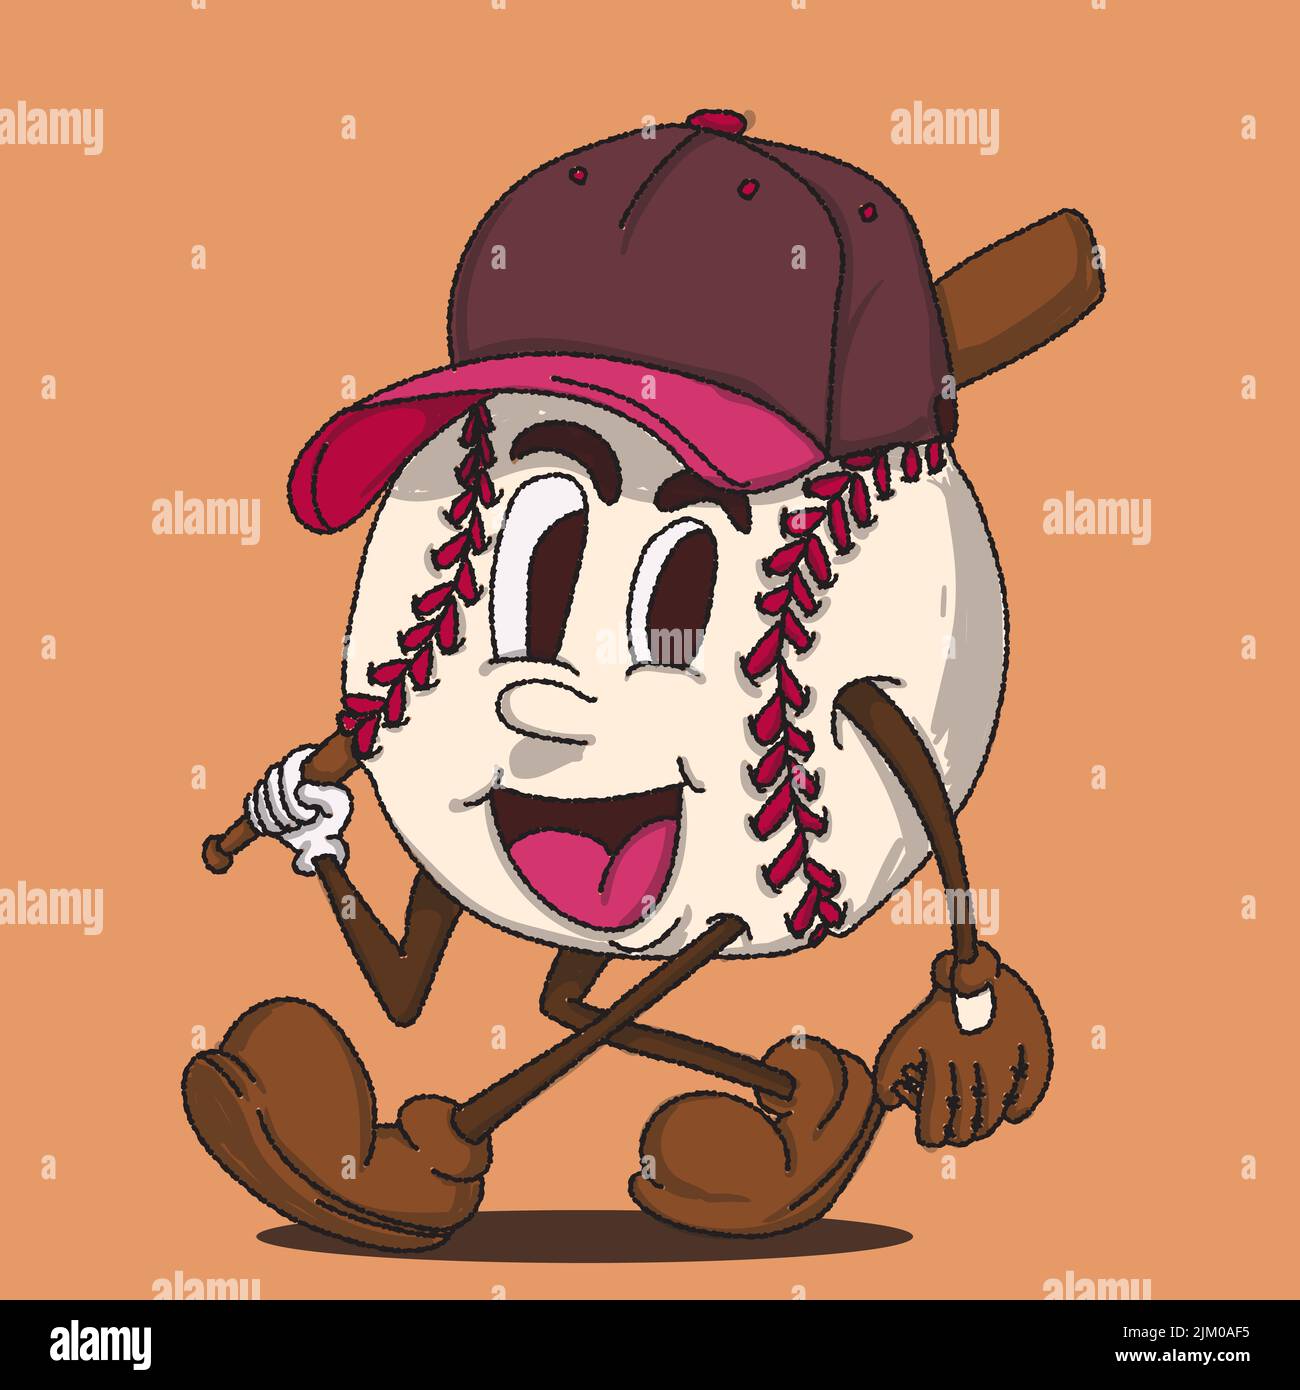 illustrazione vettoriale della mascotte da baseball con faccia. per loghi e marchi retrò vintage. illustrazione vettoriale del fumetto originale vintage Illustrazione Vettoriale